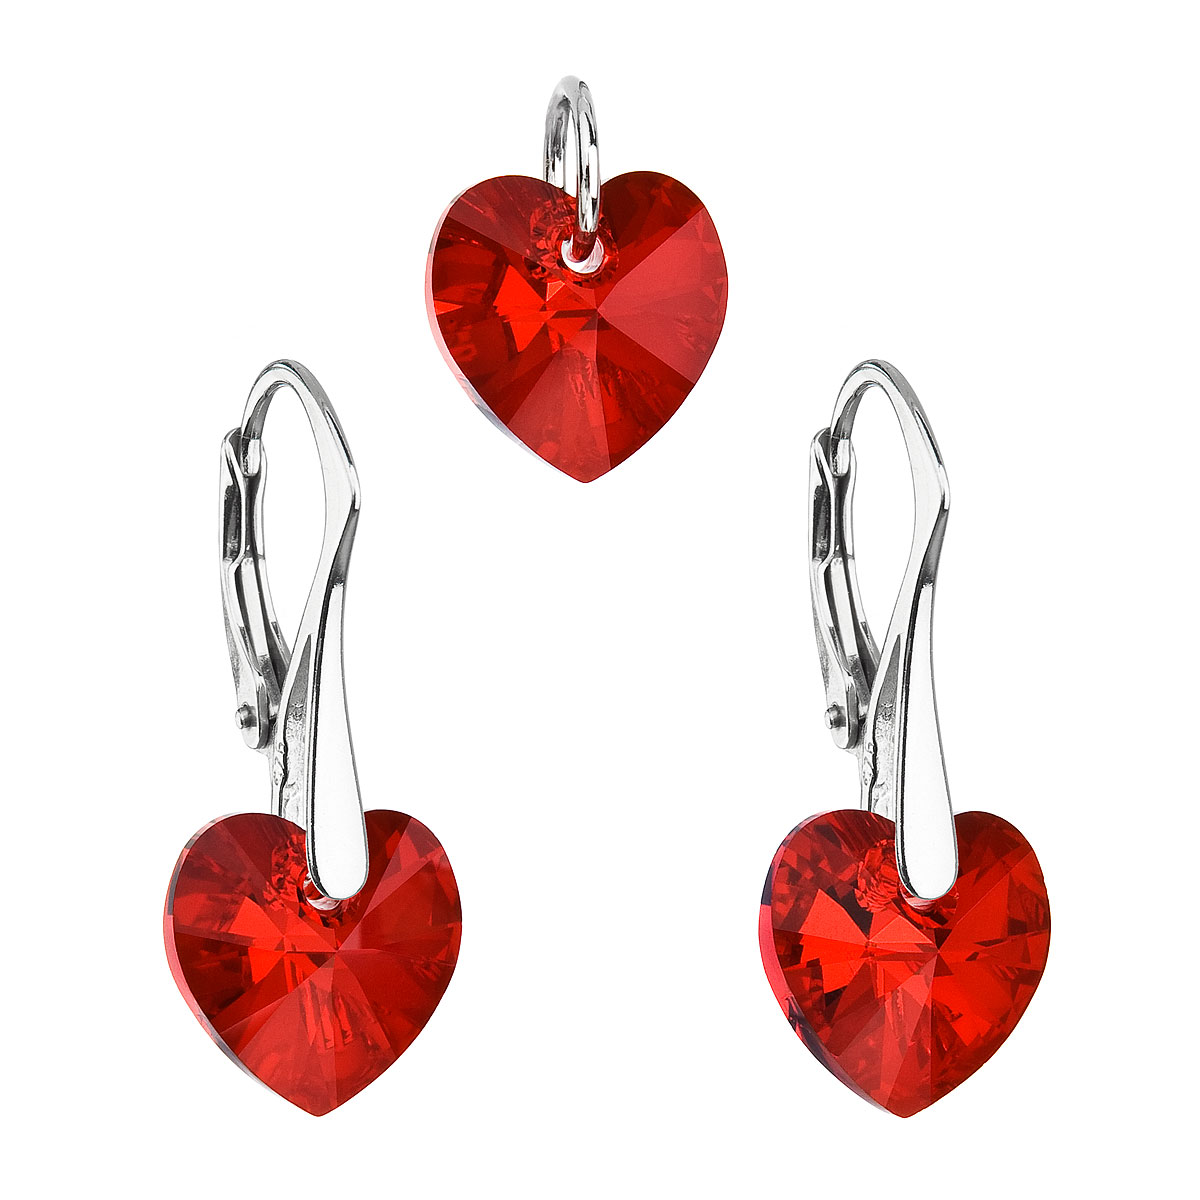 Evolution Group Sada šperků s krystaly Swarovski náušnice a přívěsek červená srdce 39003.4